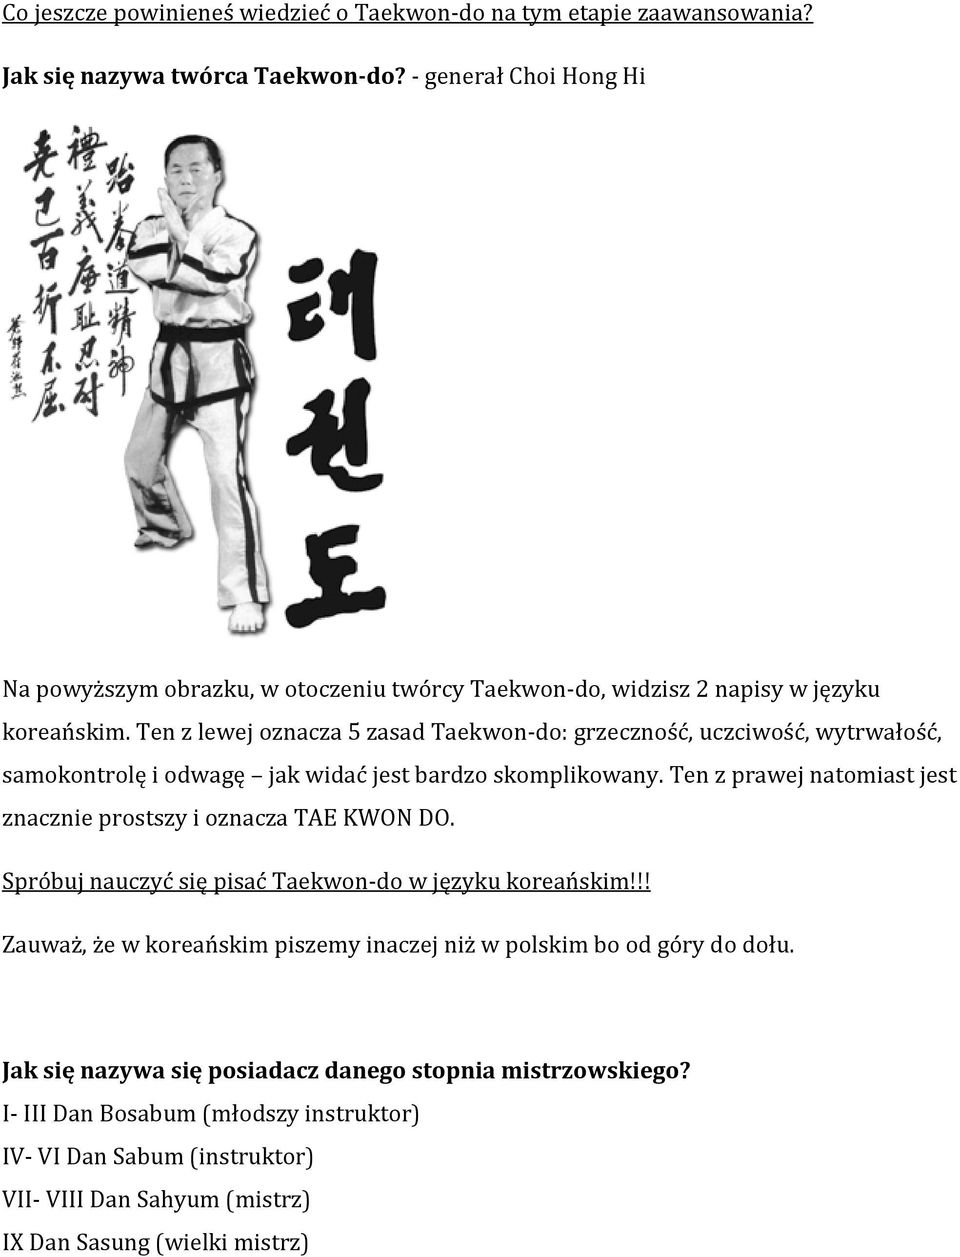 Ten z lewej oznacza 5 zasad Taekwon-do: grzeczność, uczciwość, wytrwałość, samokontrolę i odwagę jak widać jest bardzo skomplikowany.